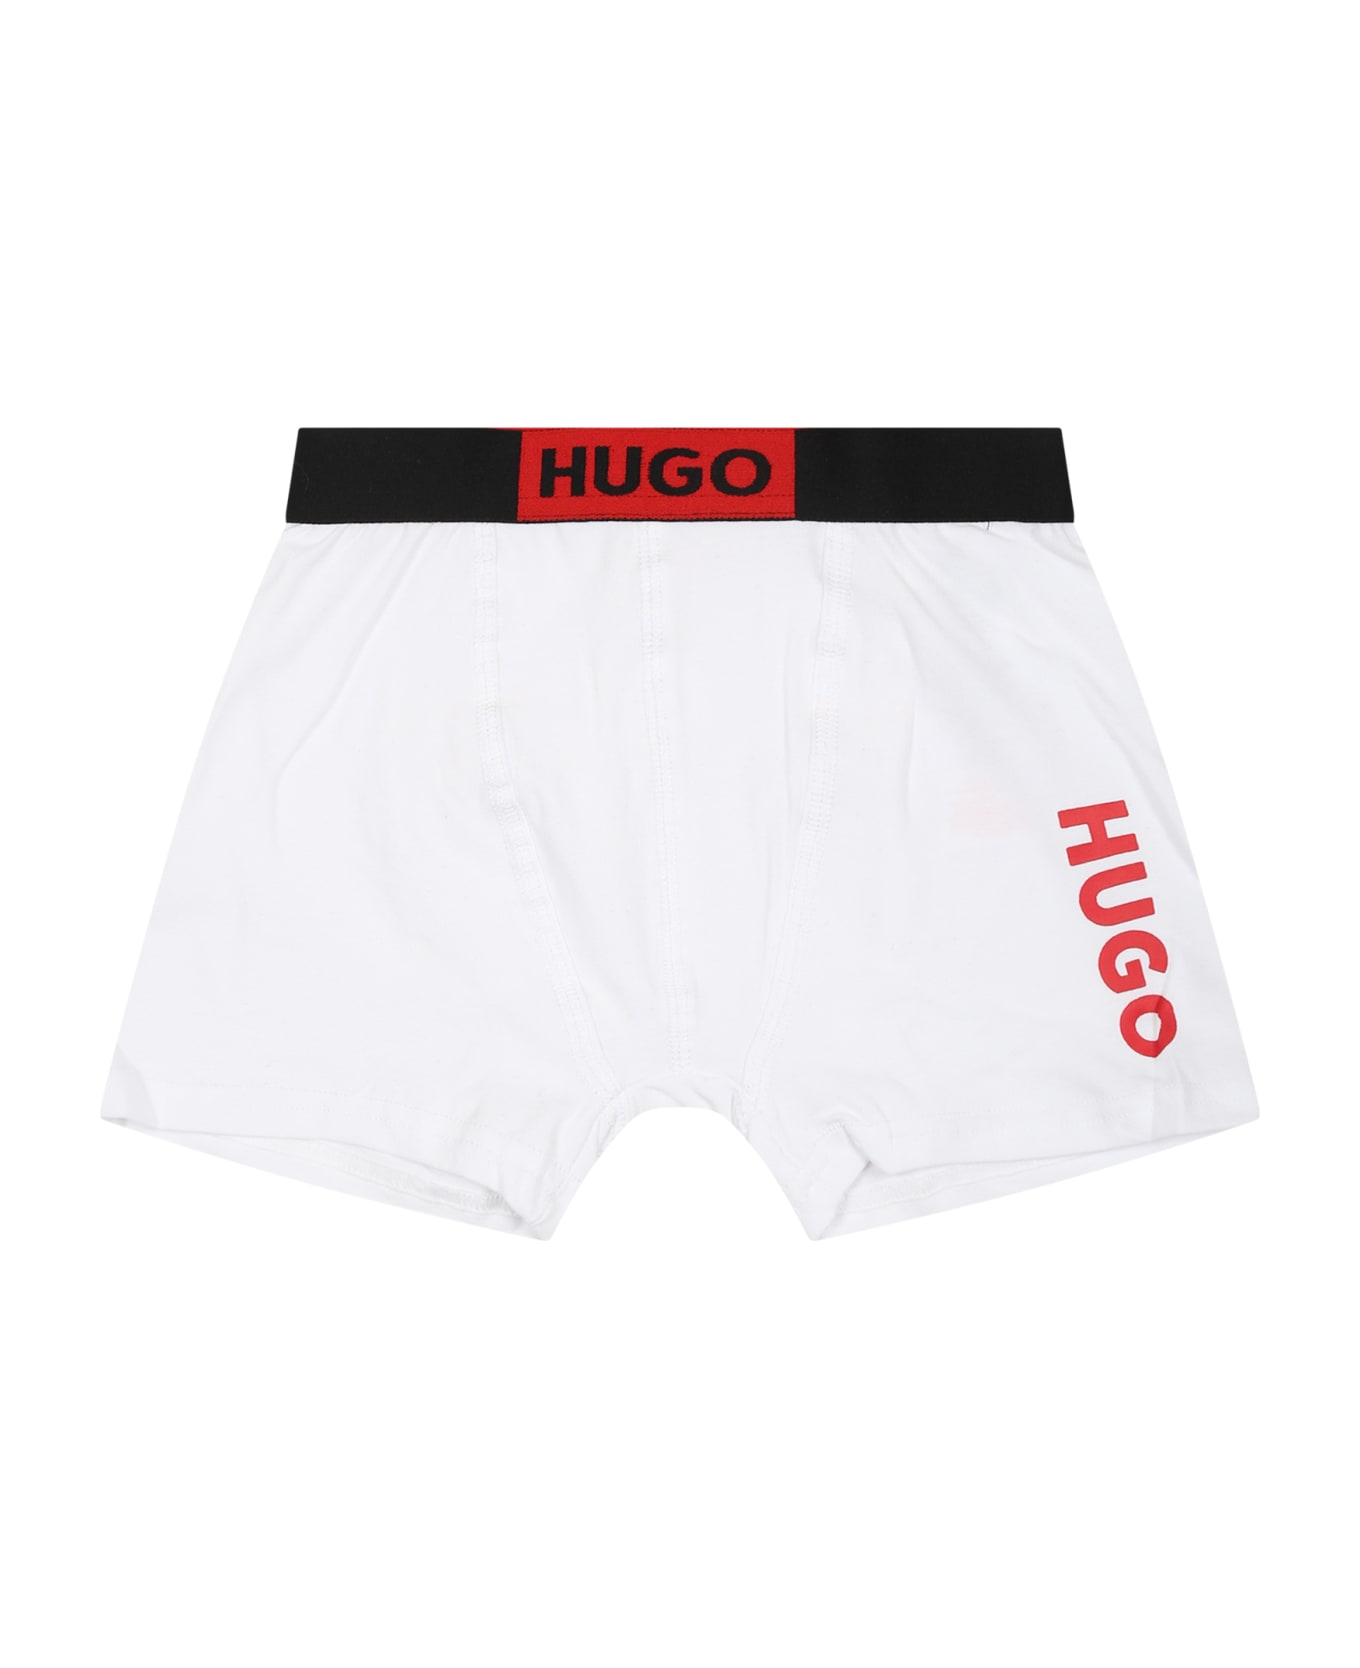 Hugo Boss Multicolor Set For Boy With Logo - Multicolor